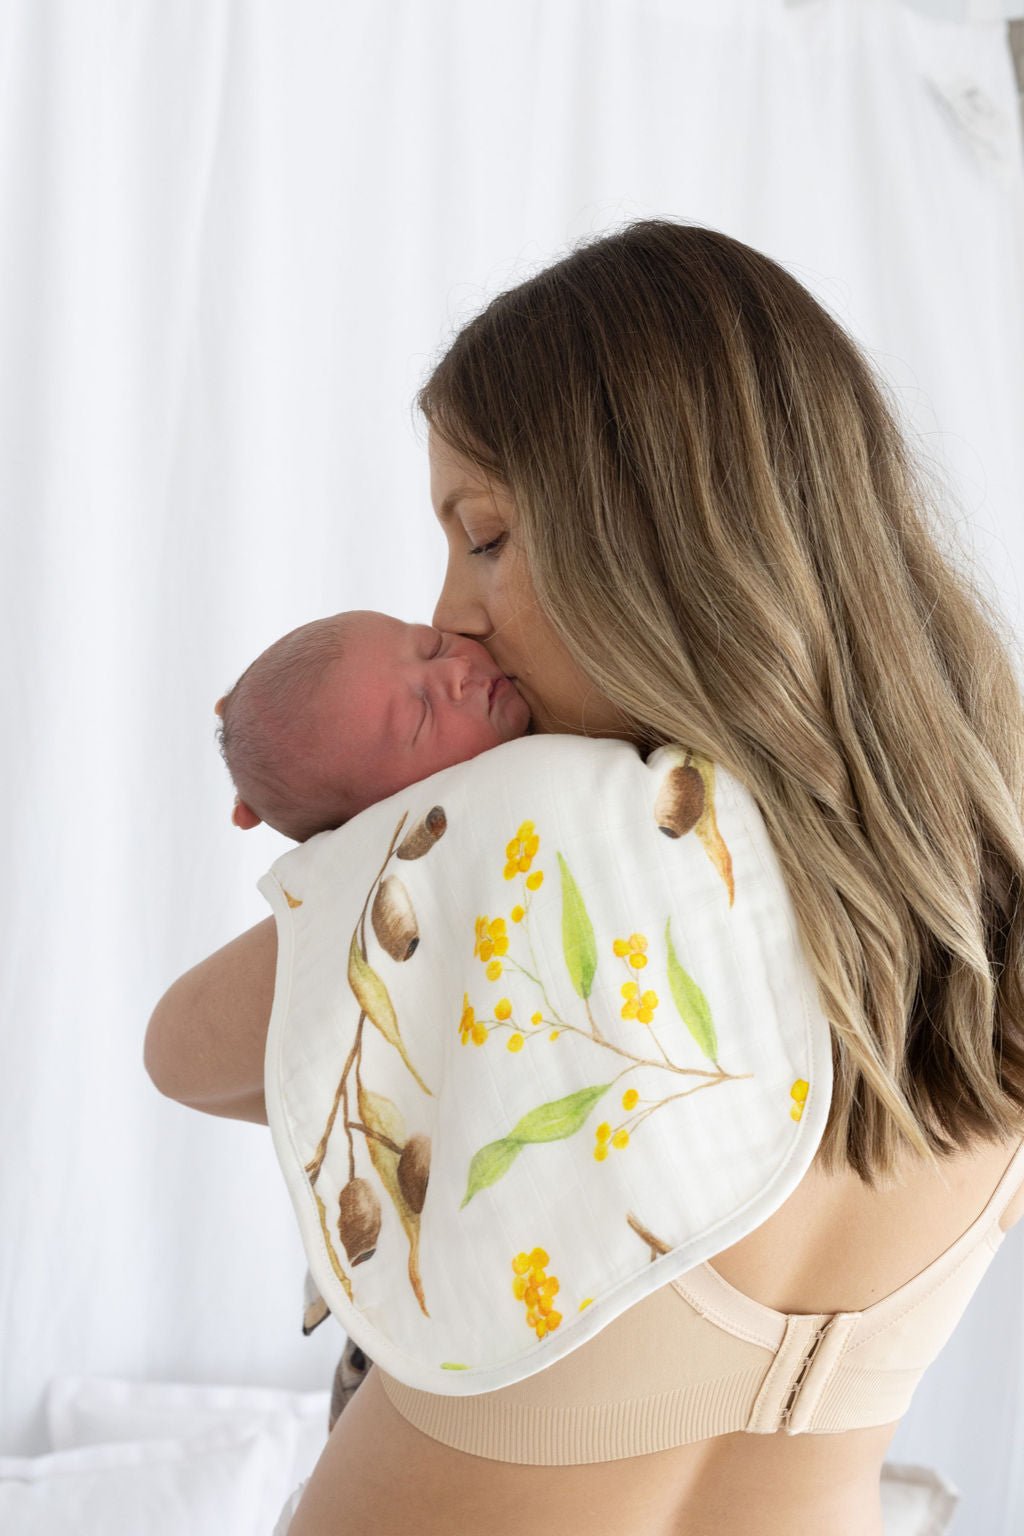 Bubba Bump - Disposable Postpartum Underwear for Maternity – Love